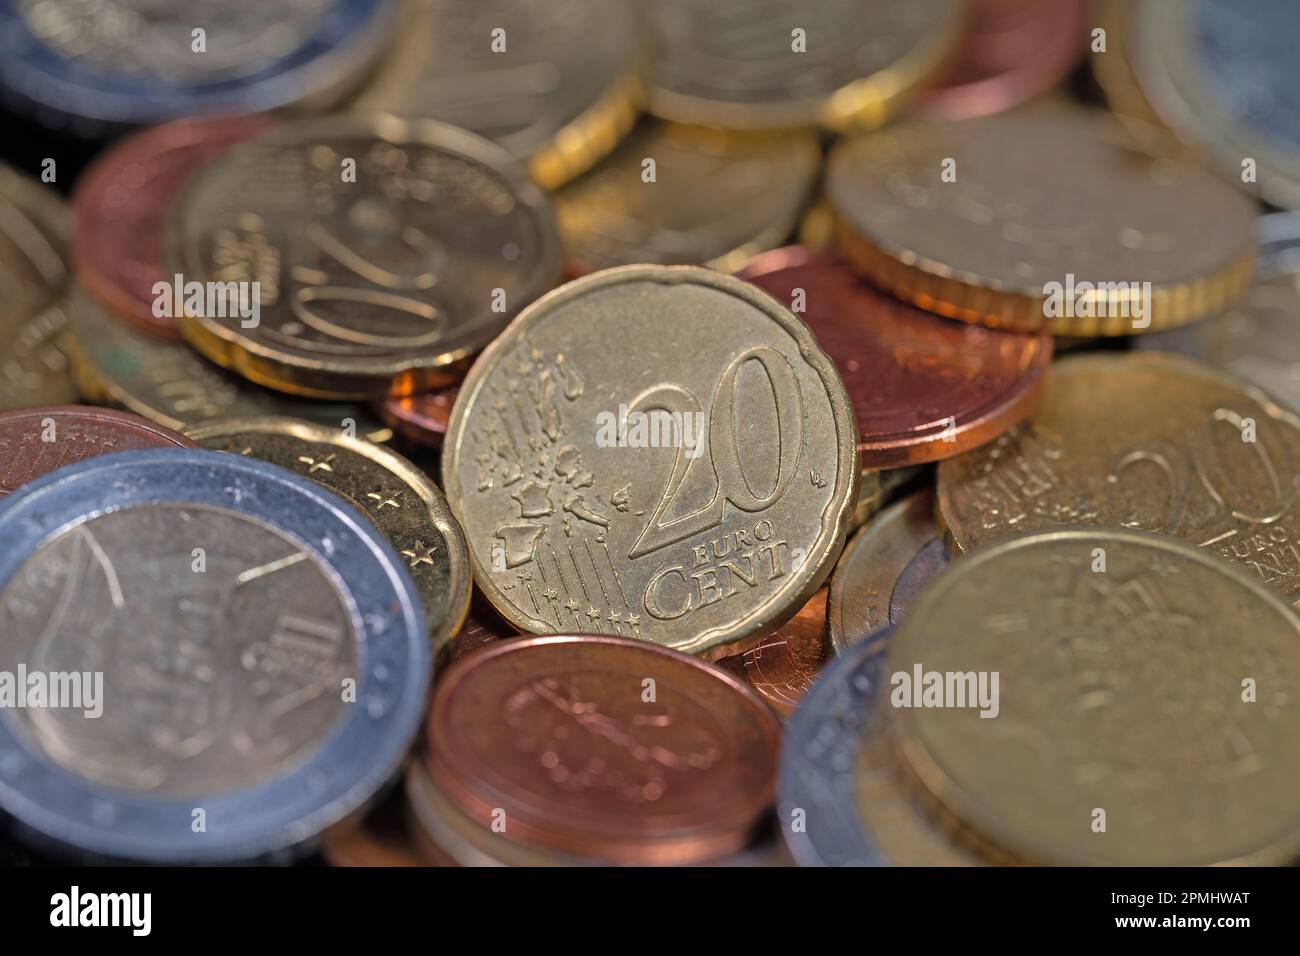 Euro coins in a closeup Stock Photo